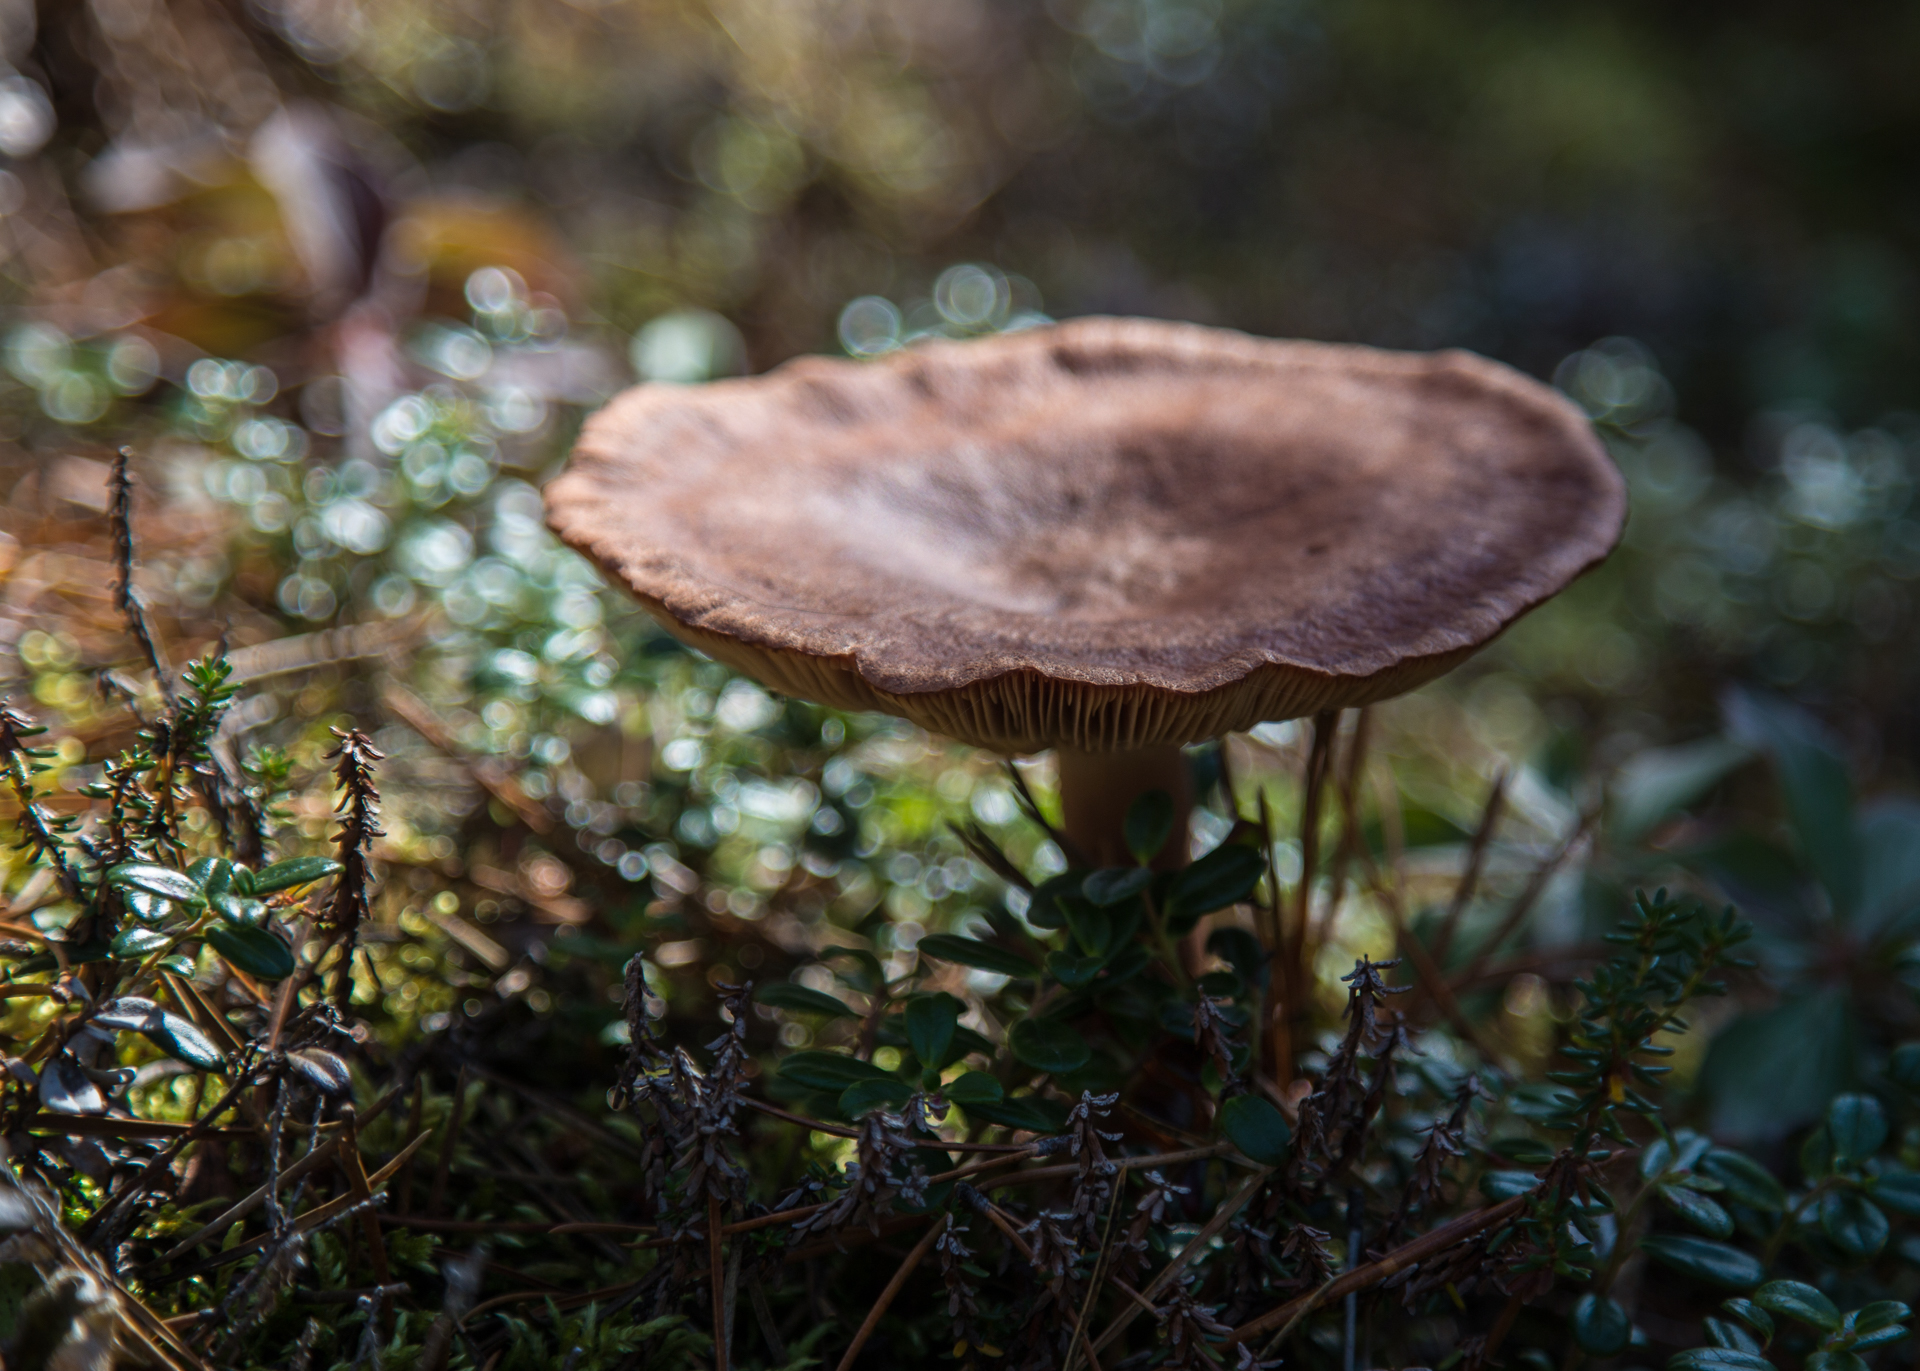 More mushrooms